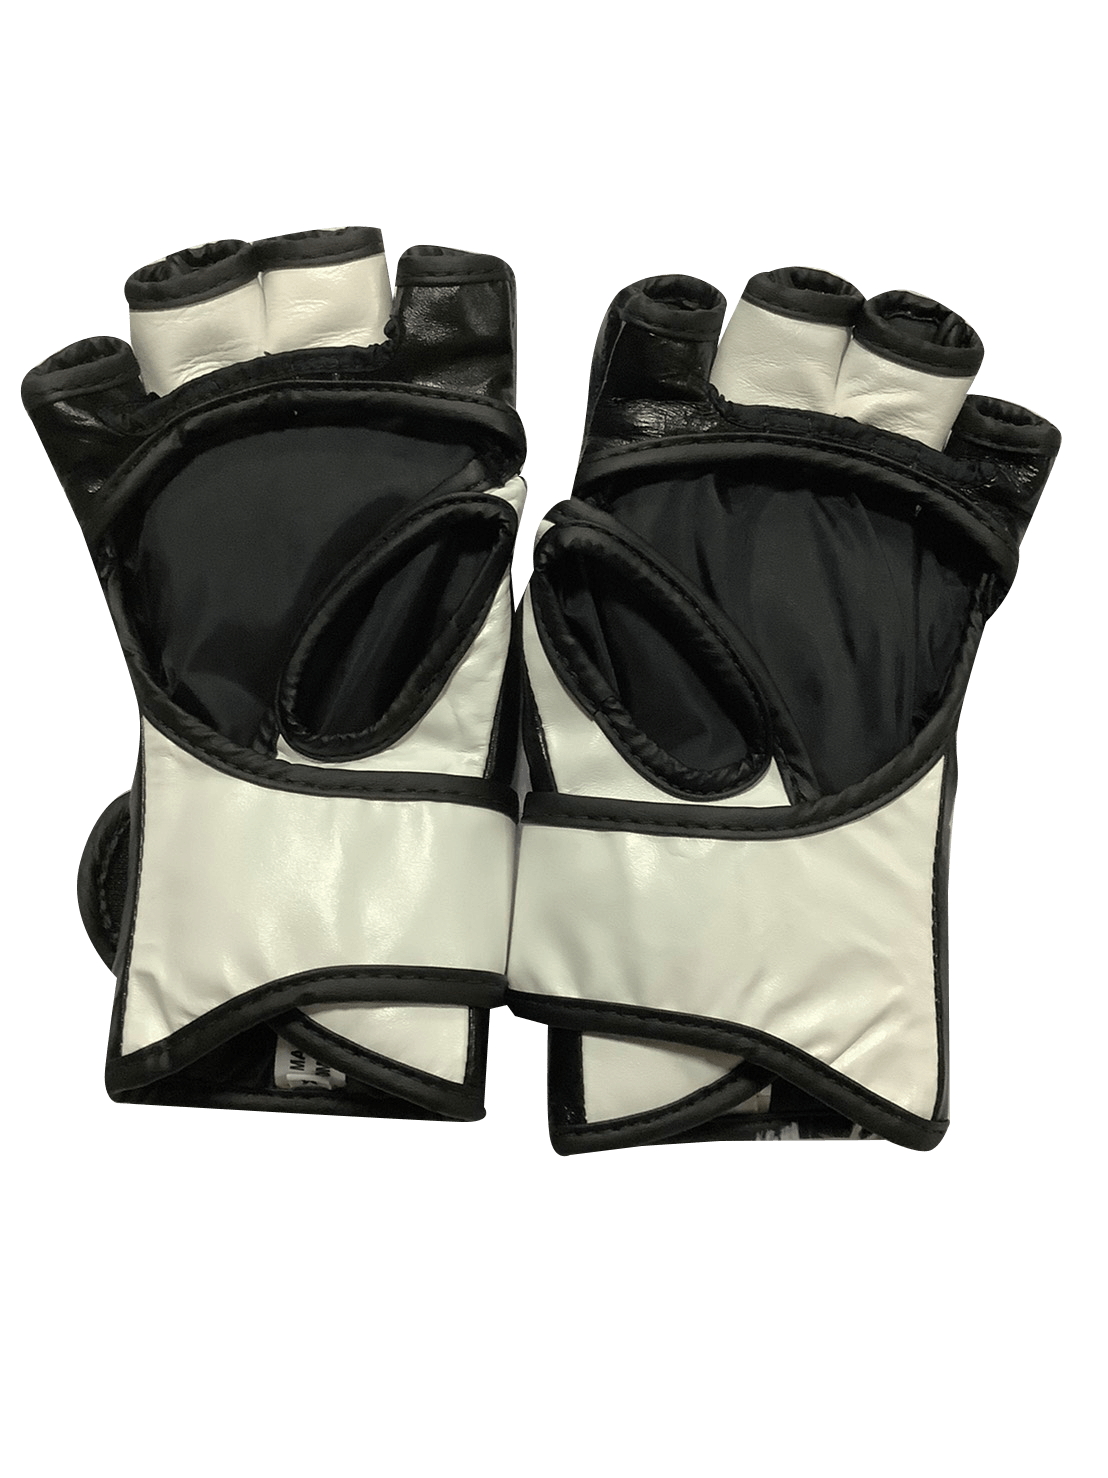 Fairtex Boxing Gloves MMA FGV12 Black White - SUPER EXPORT SHOP